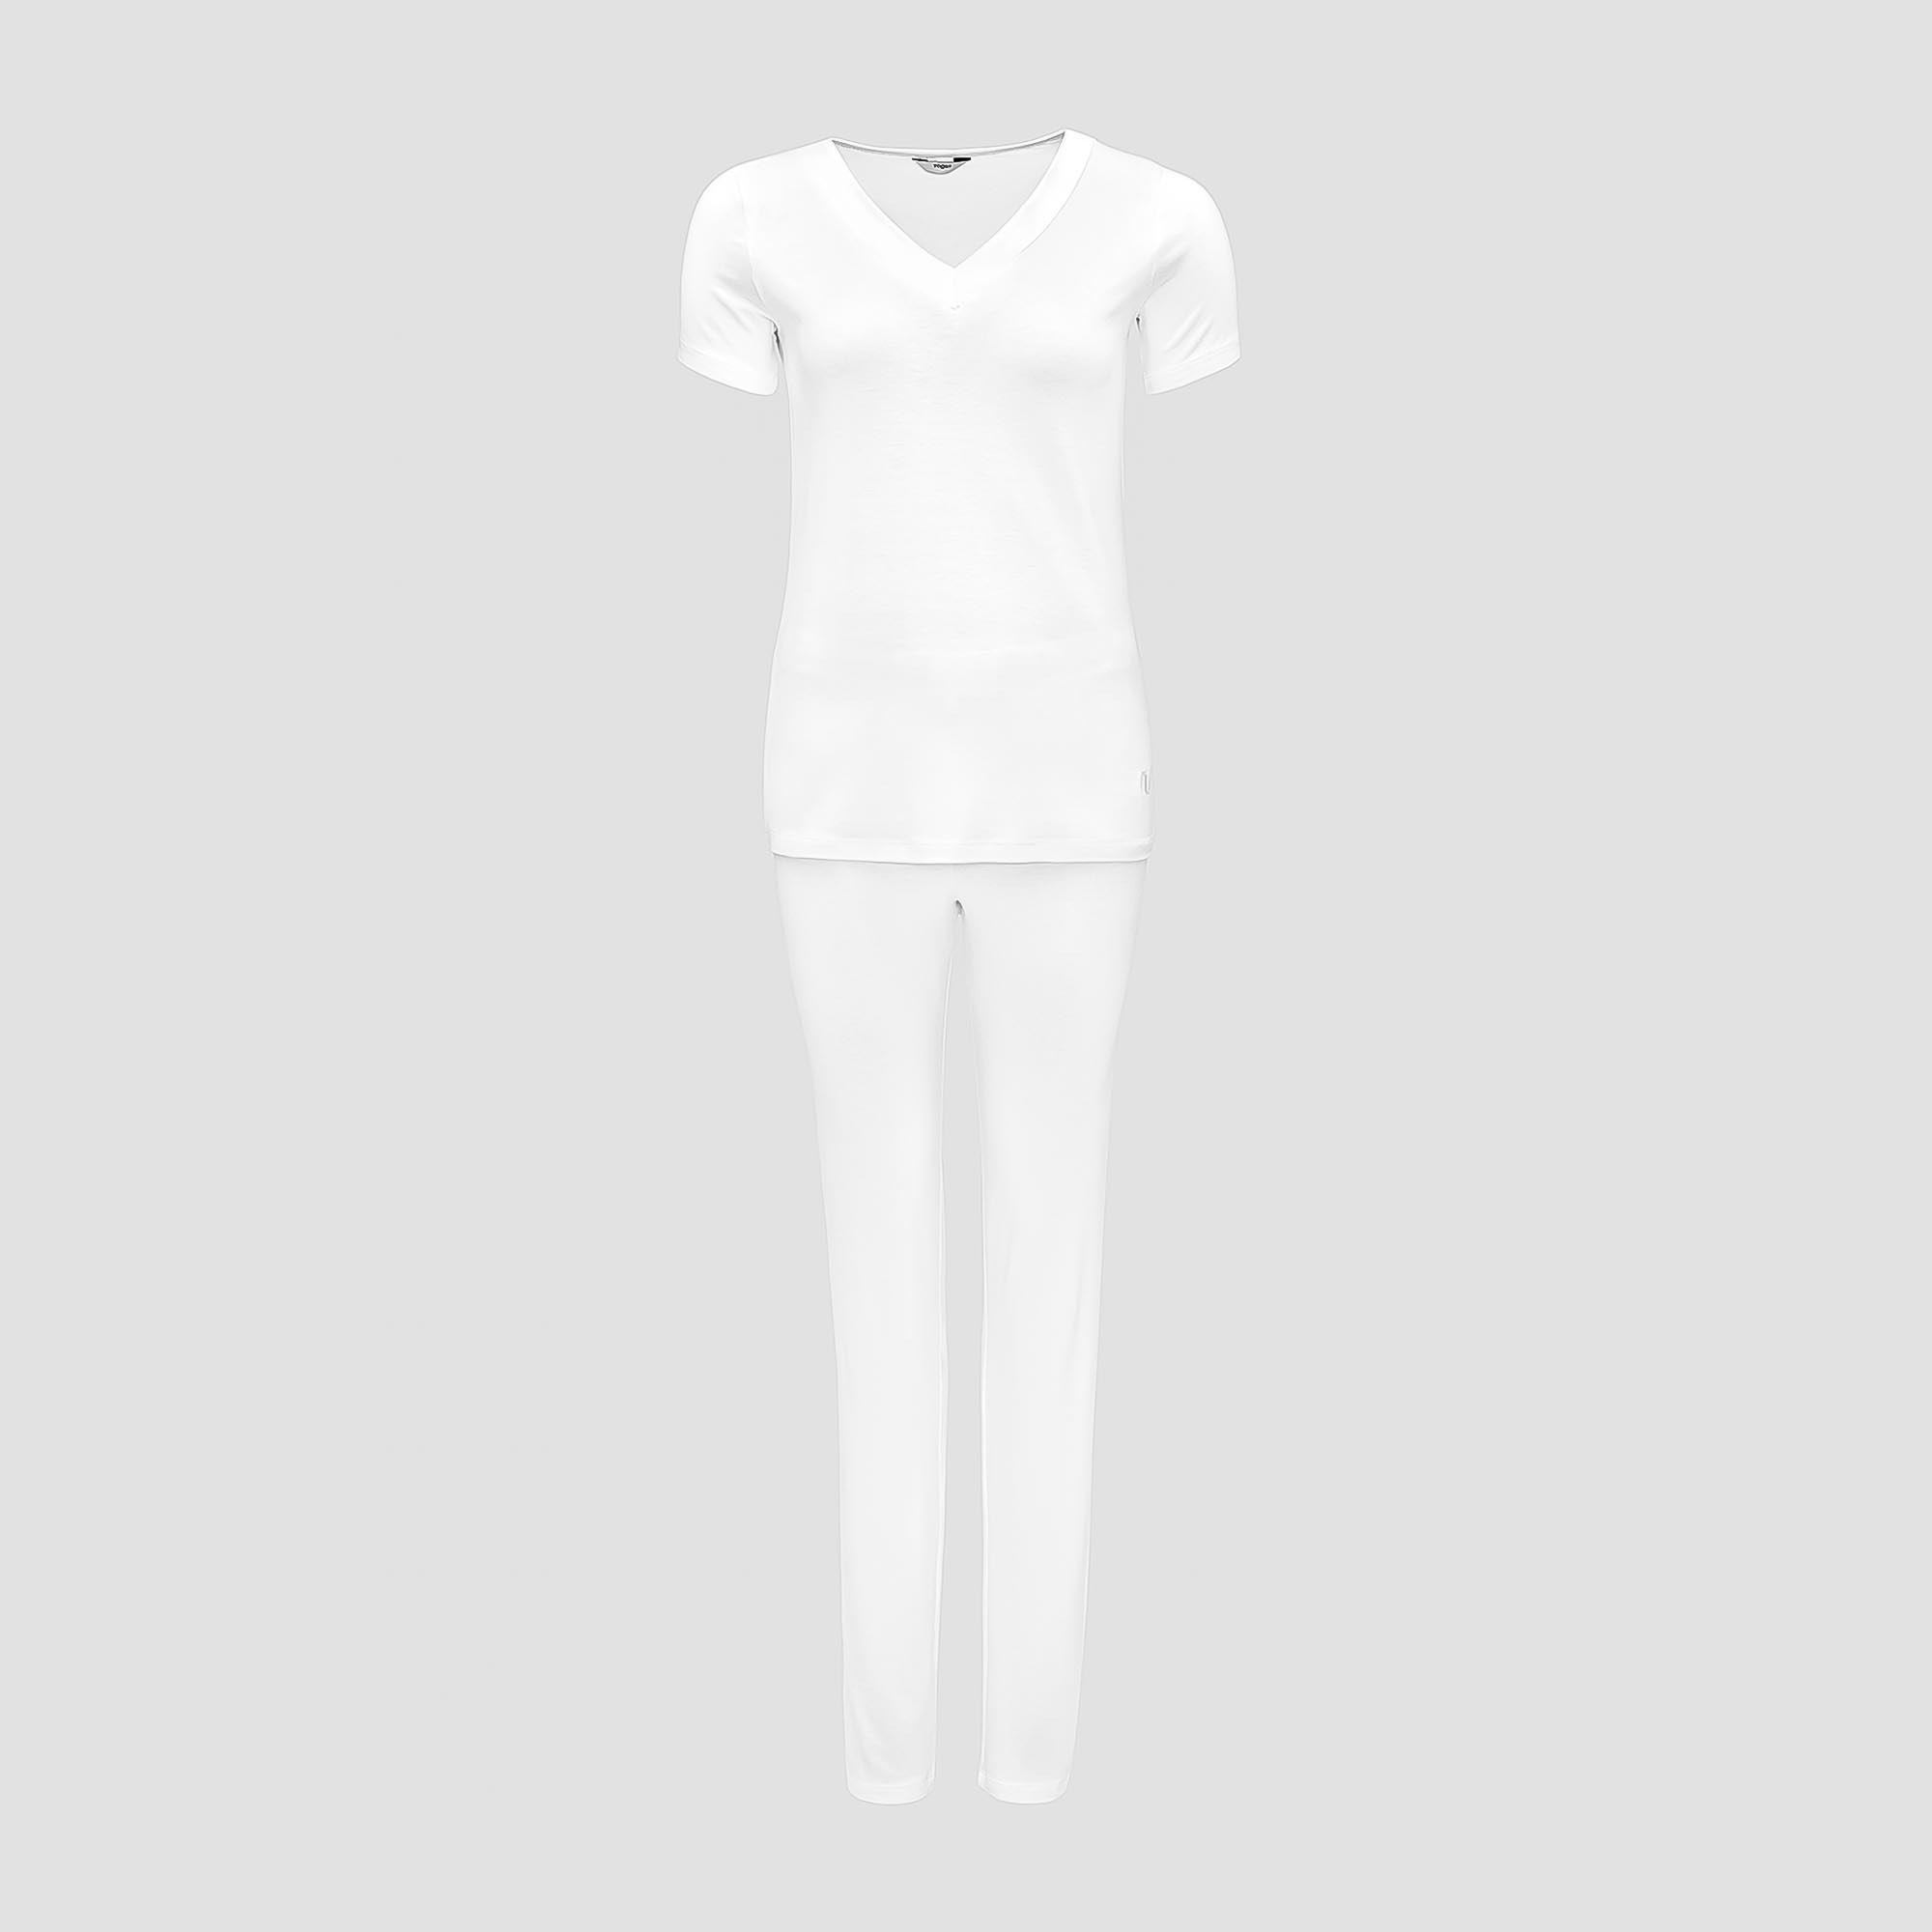 Пижама Togas Ингелла белая женская M(46) 2 предмета пижама togas ингелла белая женская s 44 2 предмета